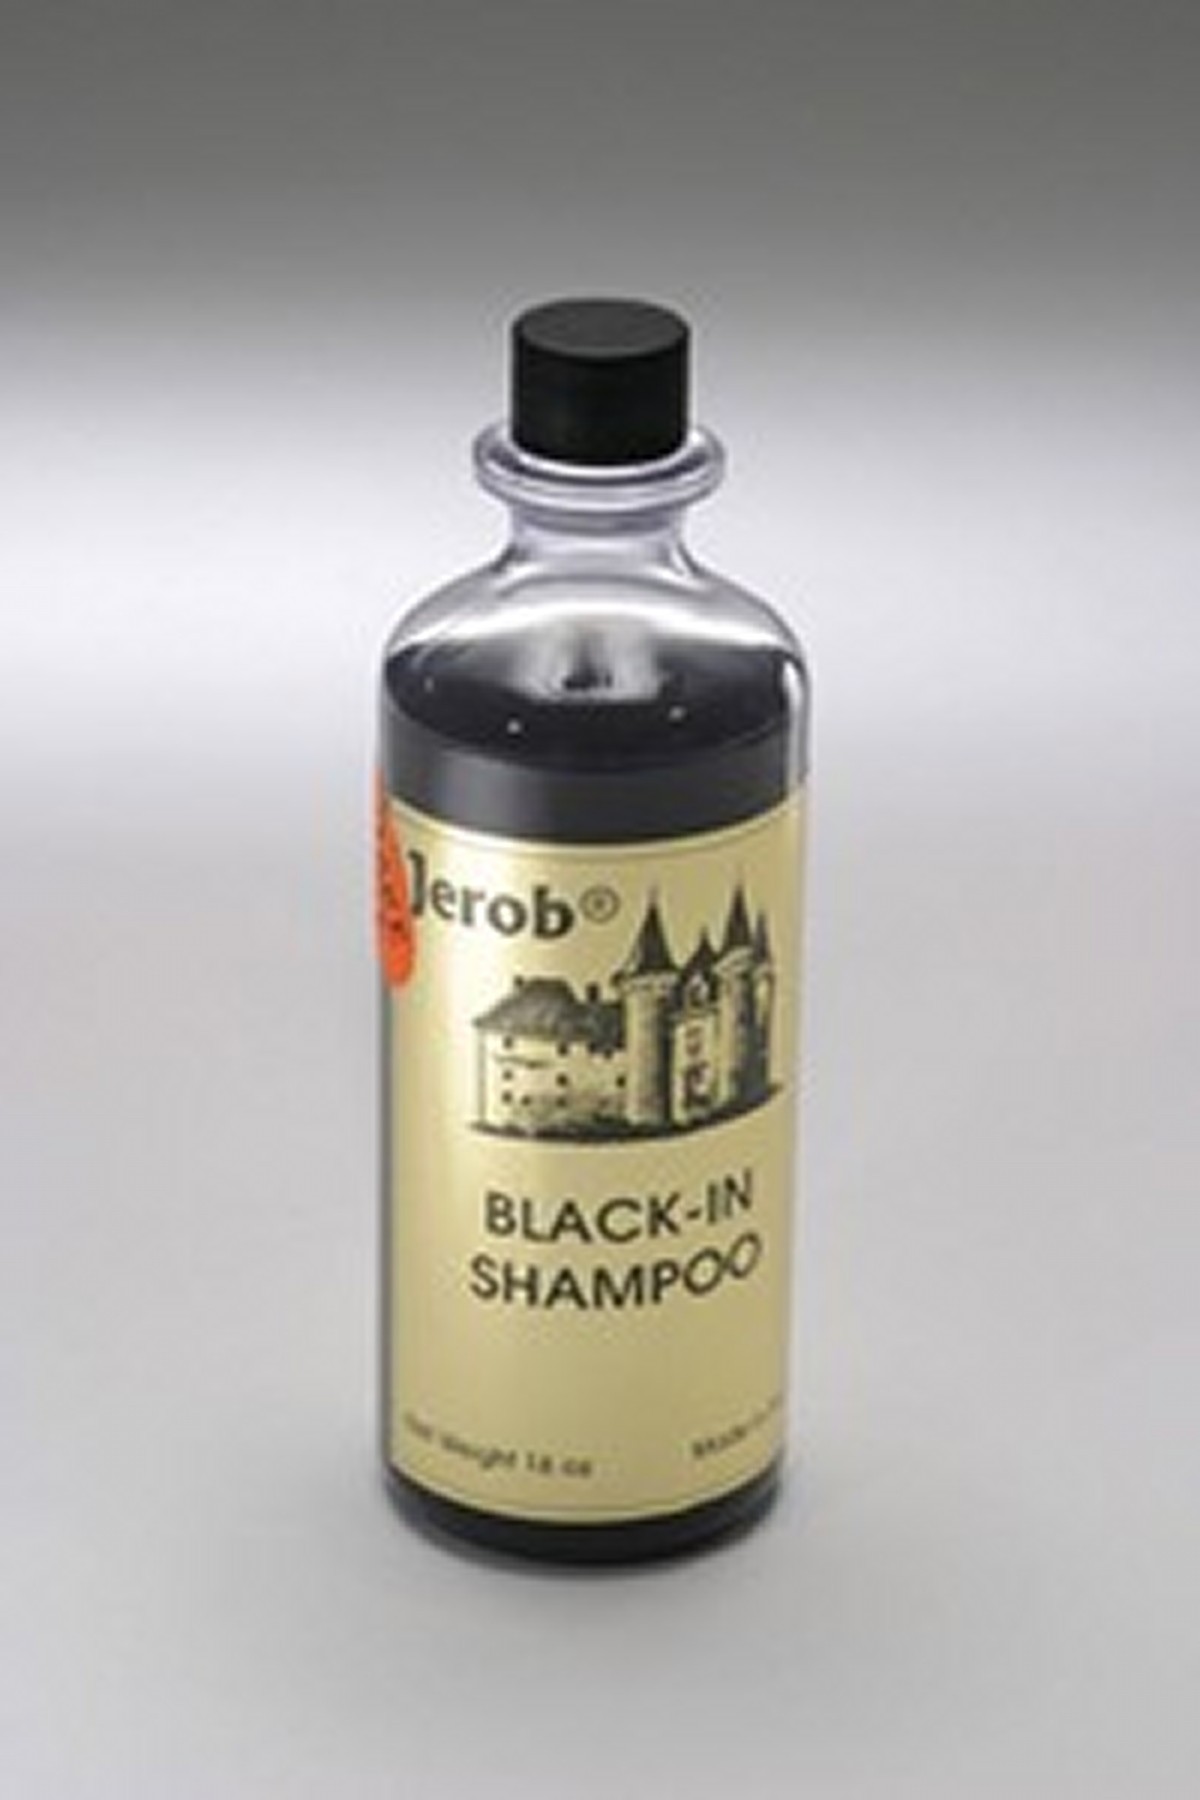 Jerob šampon Black-In 236 ml